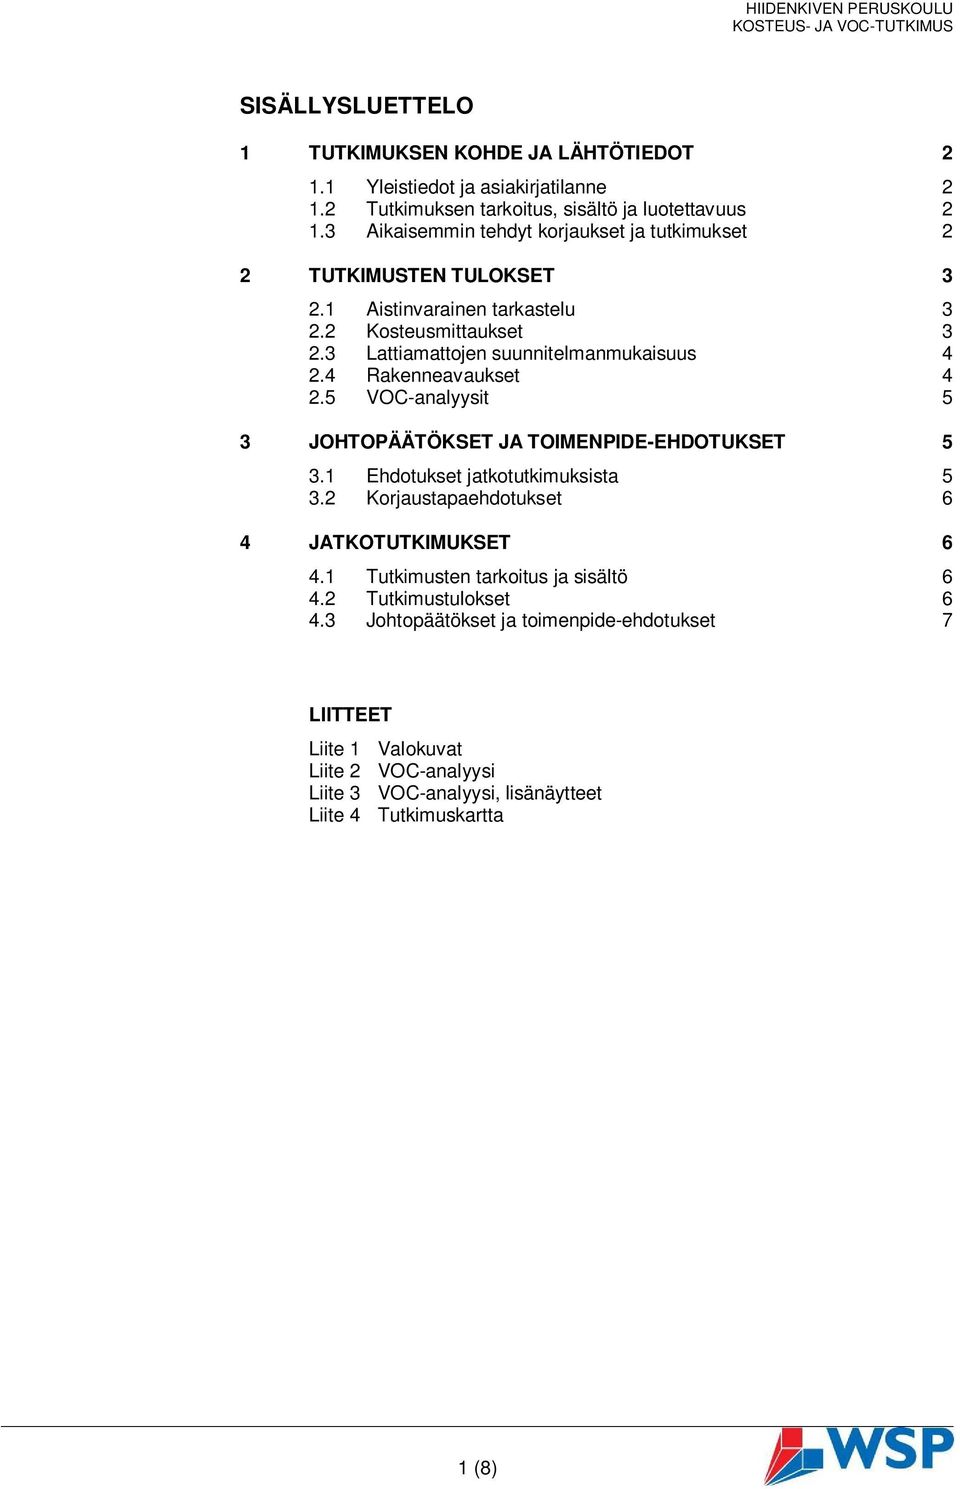 3 Lattiamattojen suunnitelmanmukaisuus 4 2.4 Rakenneavaukset 4 2.5 VOC-analyysit 5 3 JOHTOPÄÄTÖKSET JA TOIMENPIDE-EHDOTUKSET 5 3.1 Ehdotukset jatkotutkimuksista 5 3.